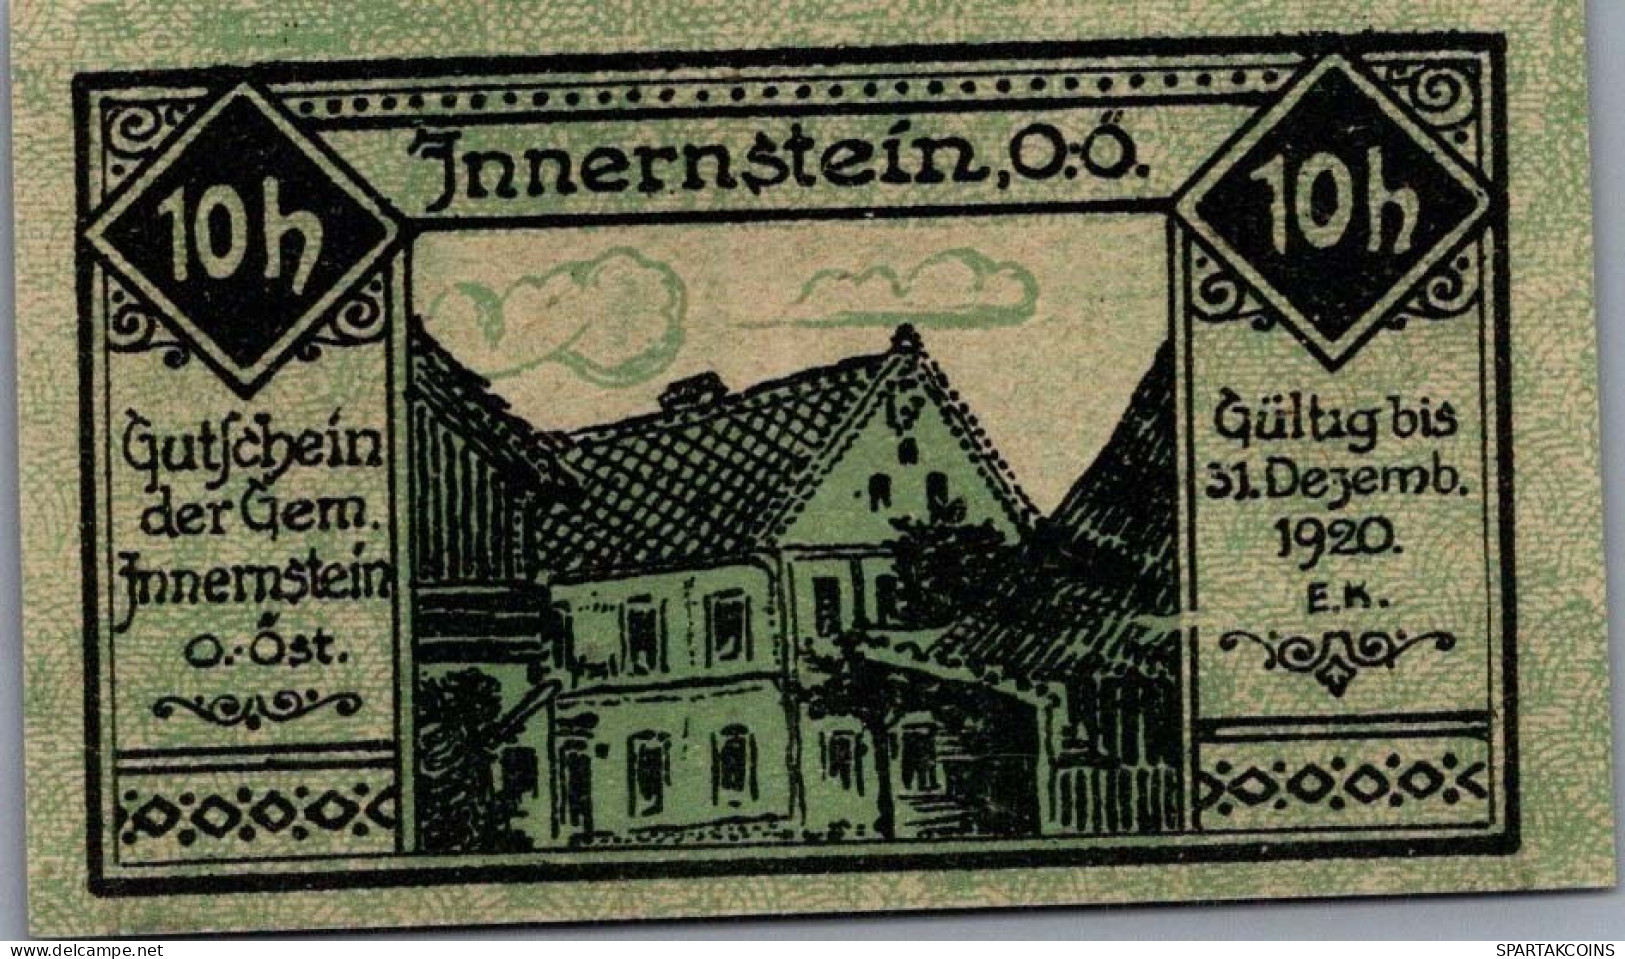 10 HELLER 1920 Stadt INNERNSTEIN Oberösterreich Österreich Notgeld Papiergeld Banknote #PG890 - Lokale Ausgaben